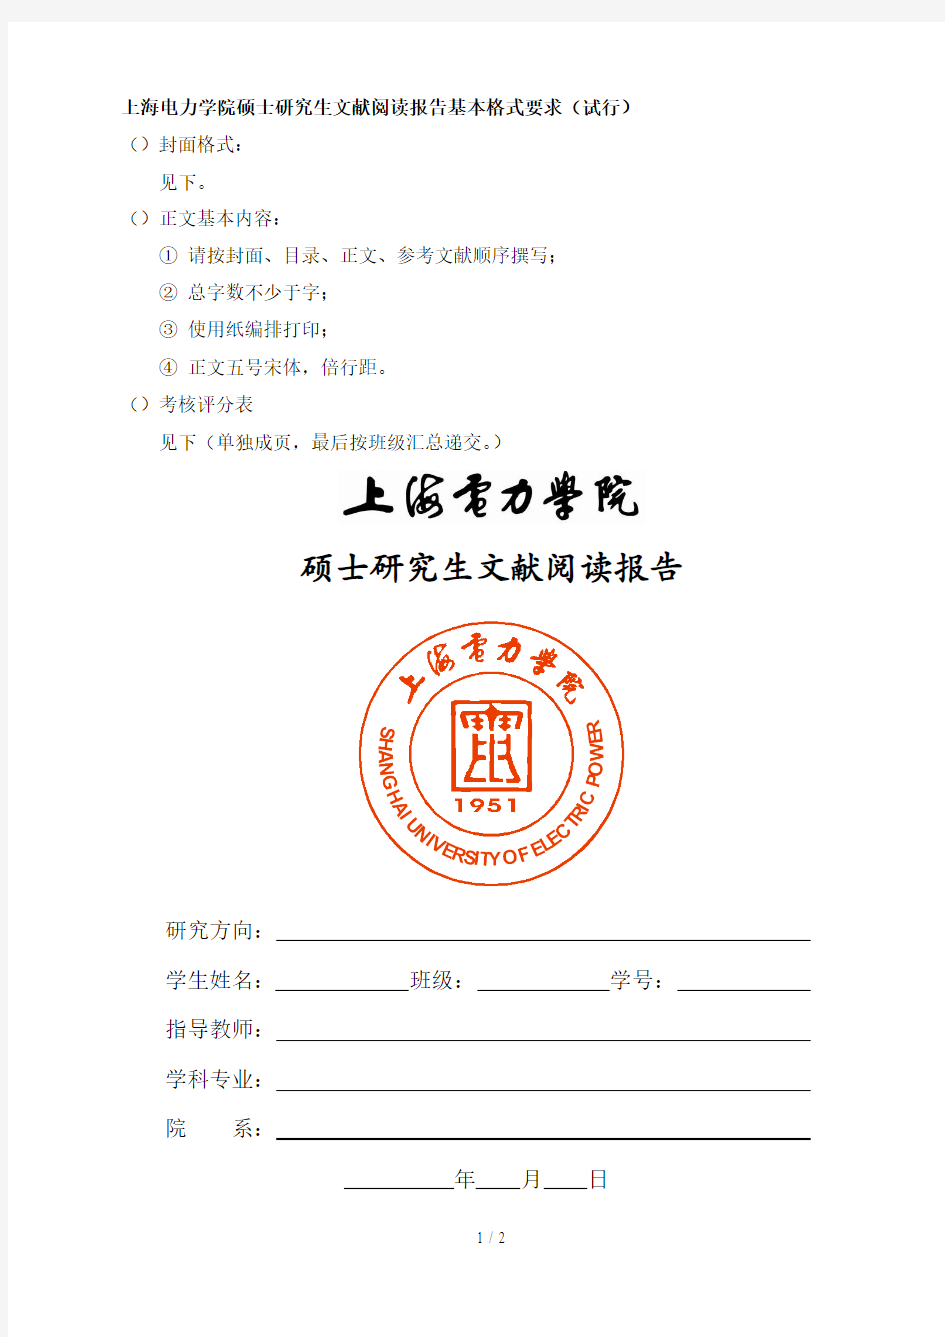 上海电力学院硕士研究生文献阅读报告基本格式要求